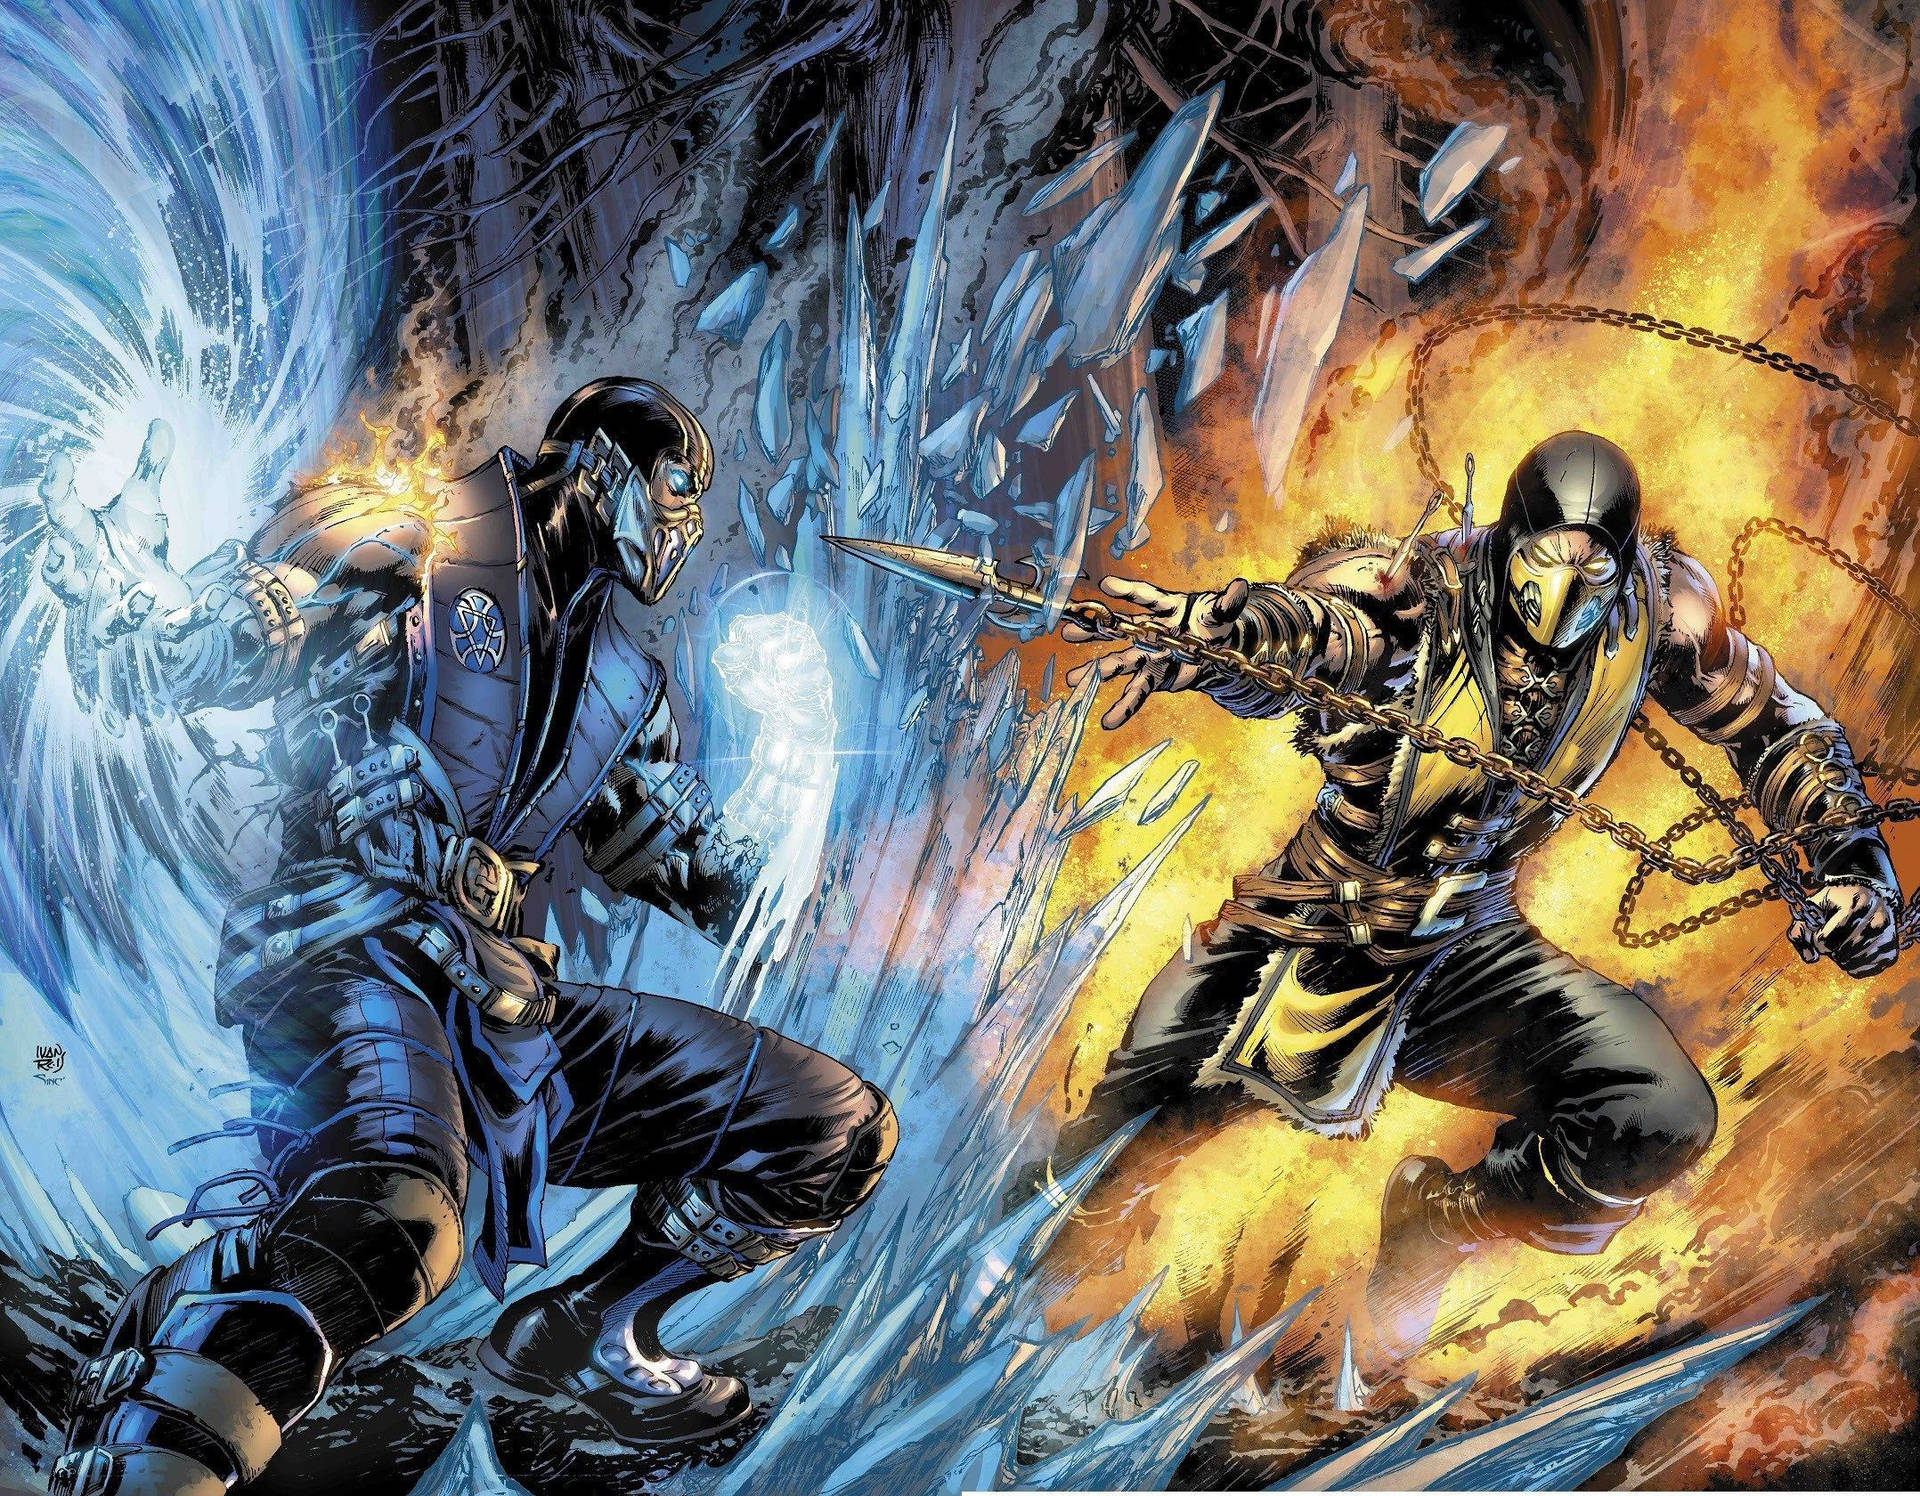 Mortal Kombat Scorpion Vs Sub Zero 2d